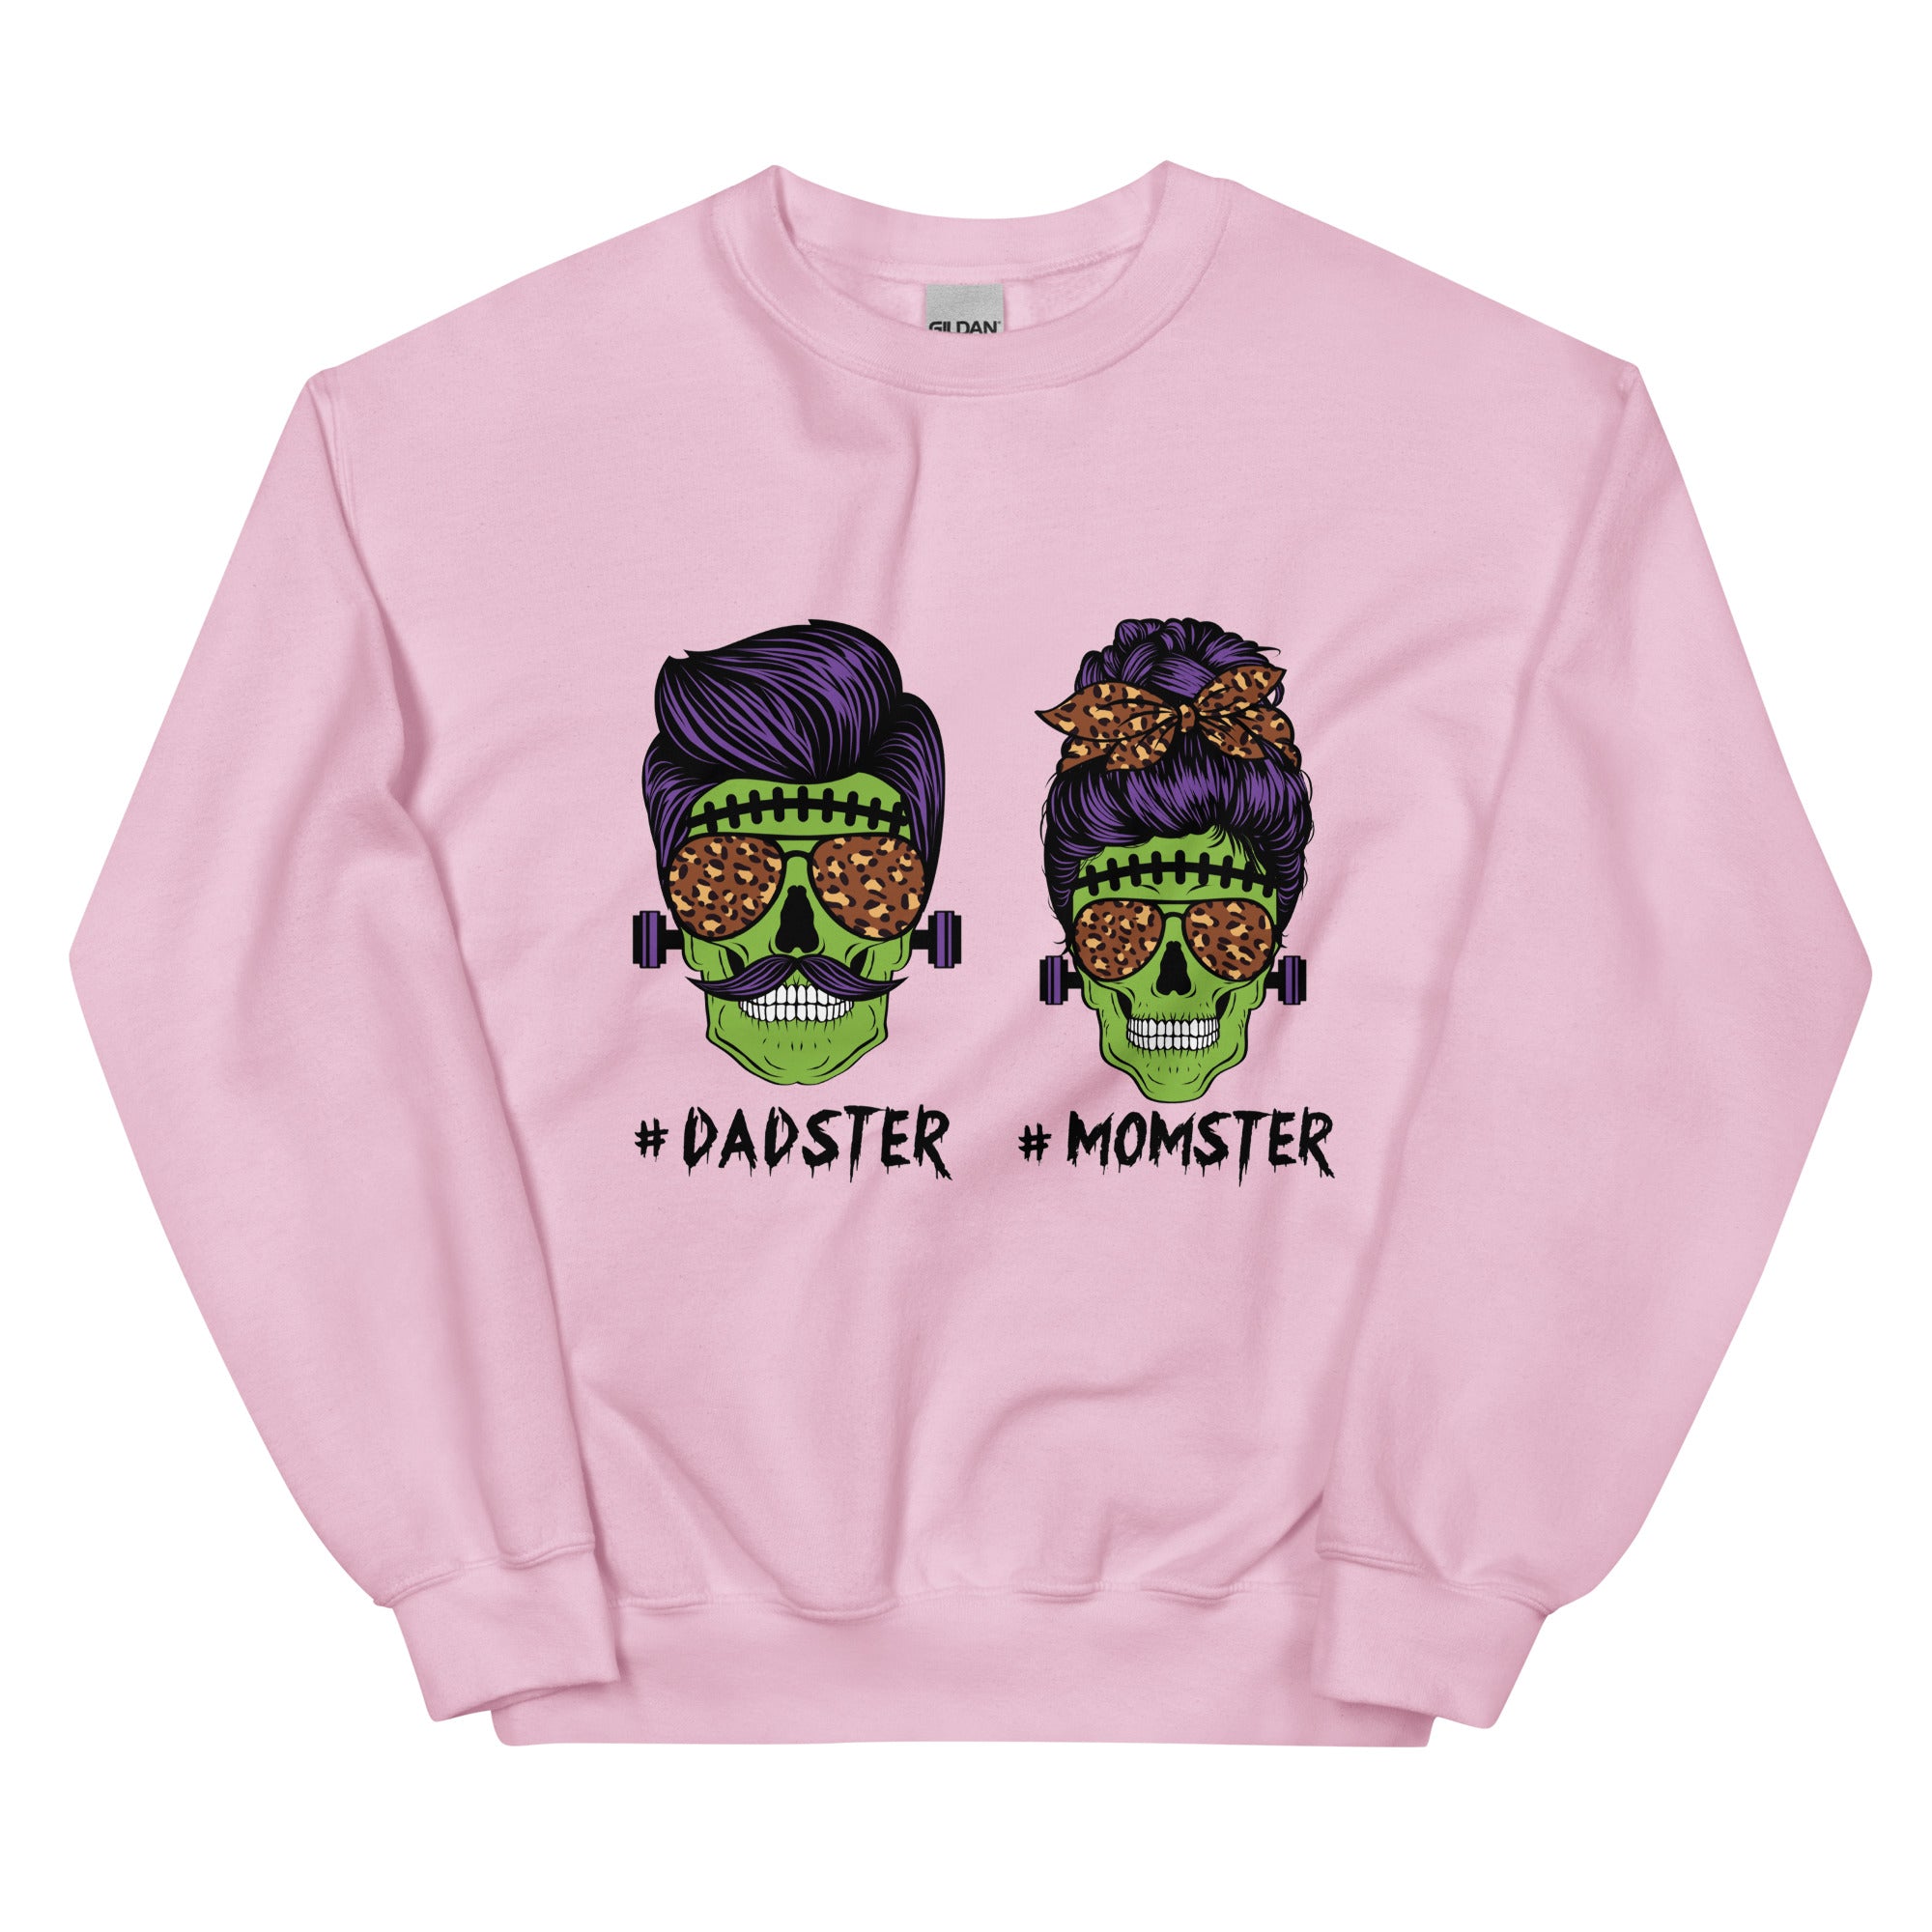 Monster Sweatshirt for women